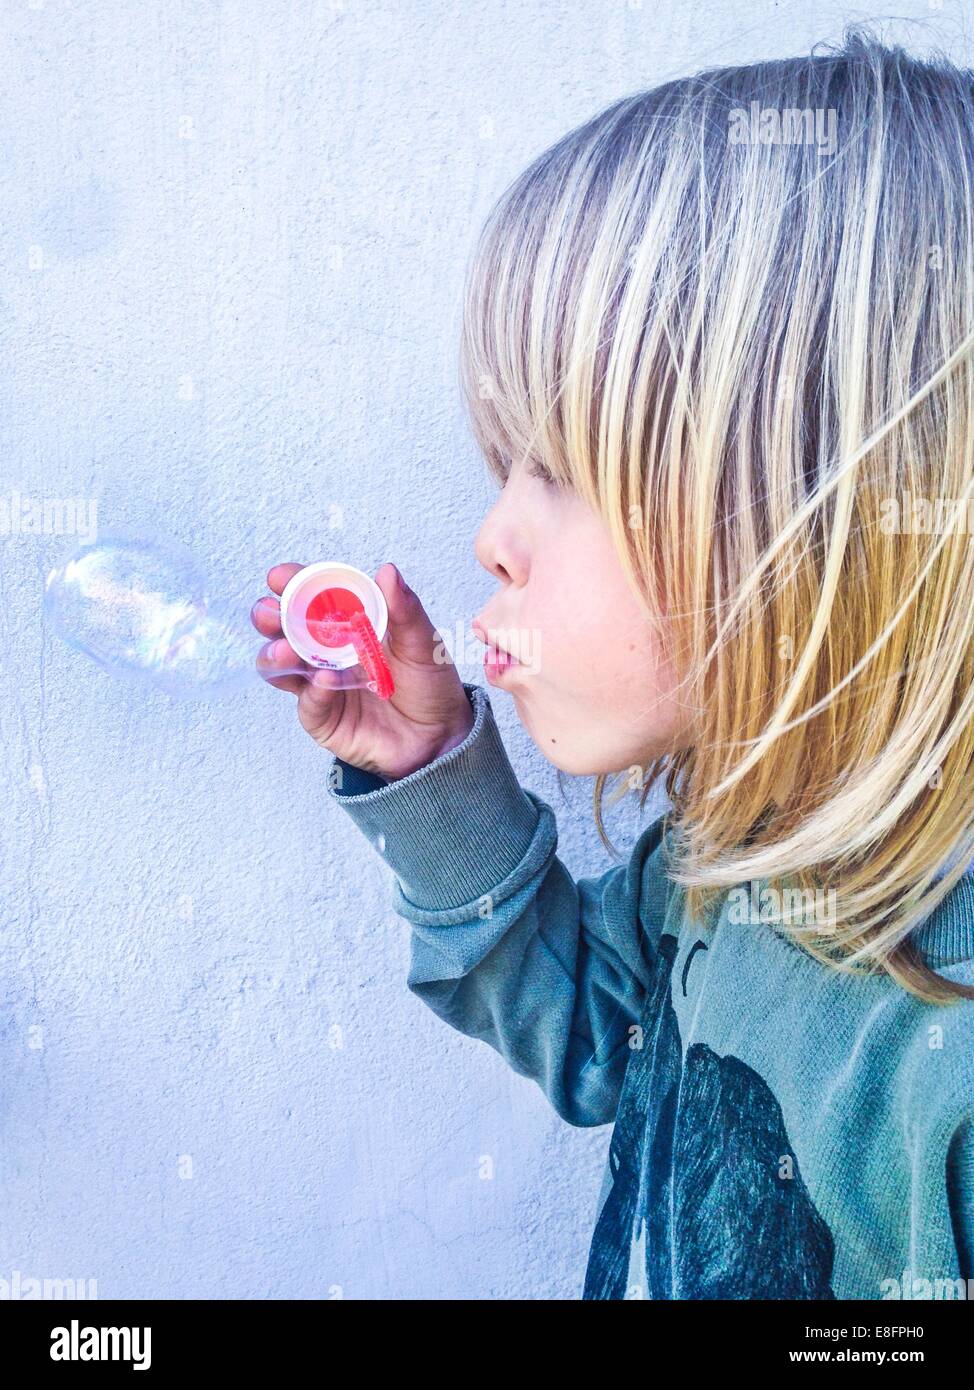 Junge hält einen Blase Zauberstab Seifenblasen Stockfoto